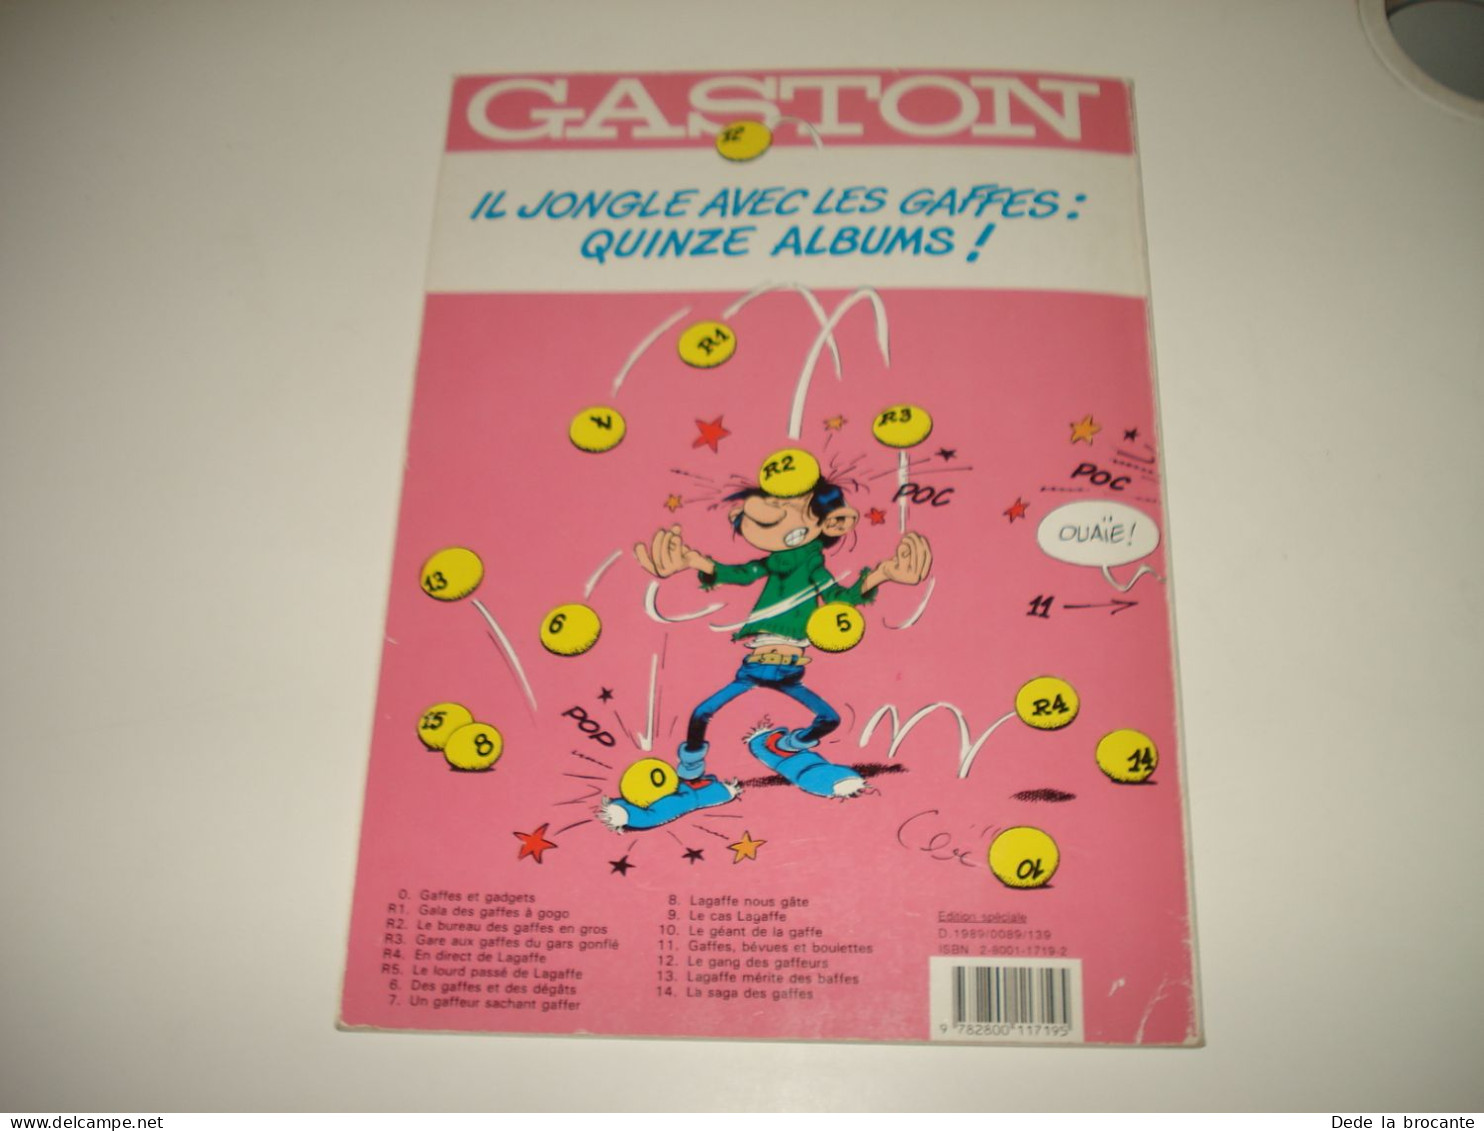 C53 / Gaston 12 " Le gang des gaffeurs " - Franquin - Ed.  spéciale 1989 - TTBE